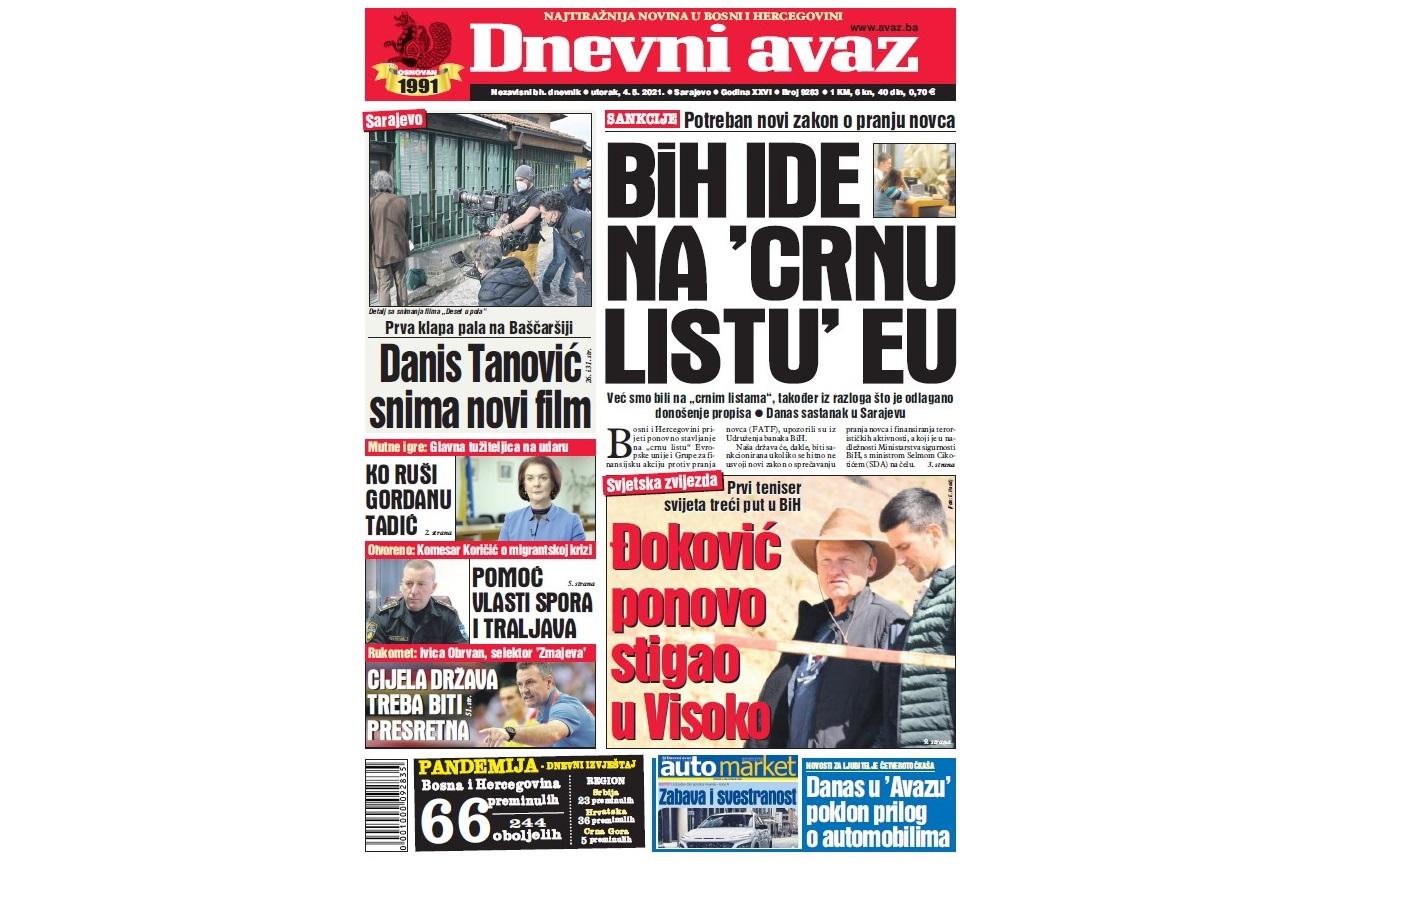 Danas u "Dnevnom avazu" čitajte: BiH ide na "crnu listu" EU